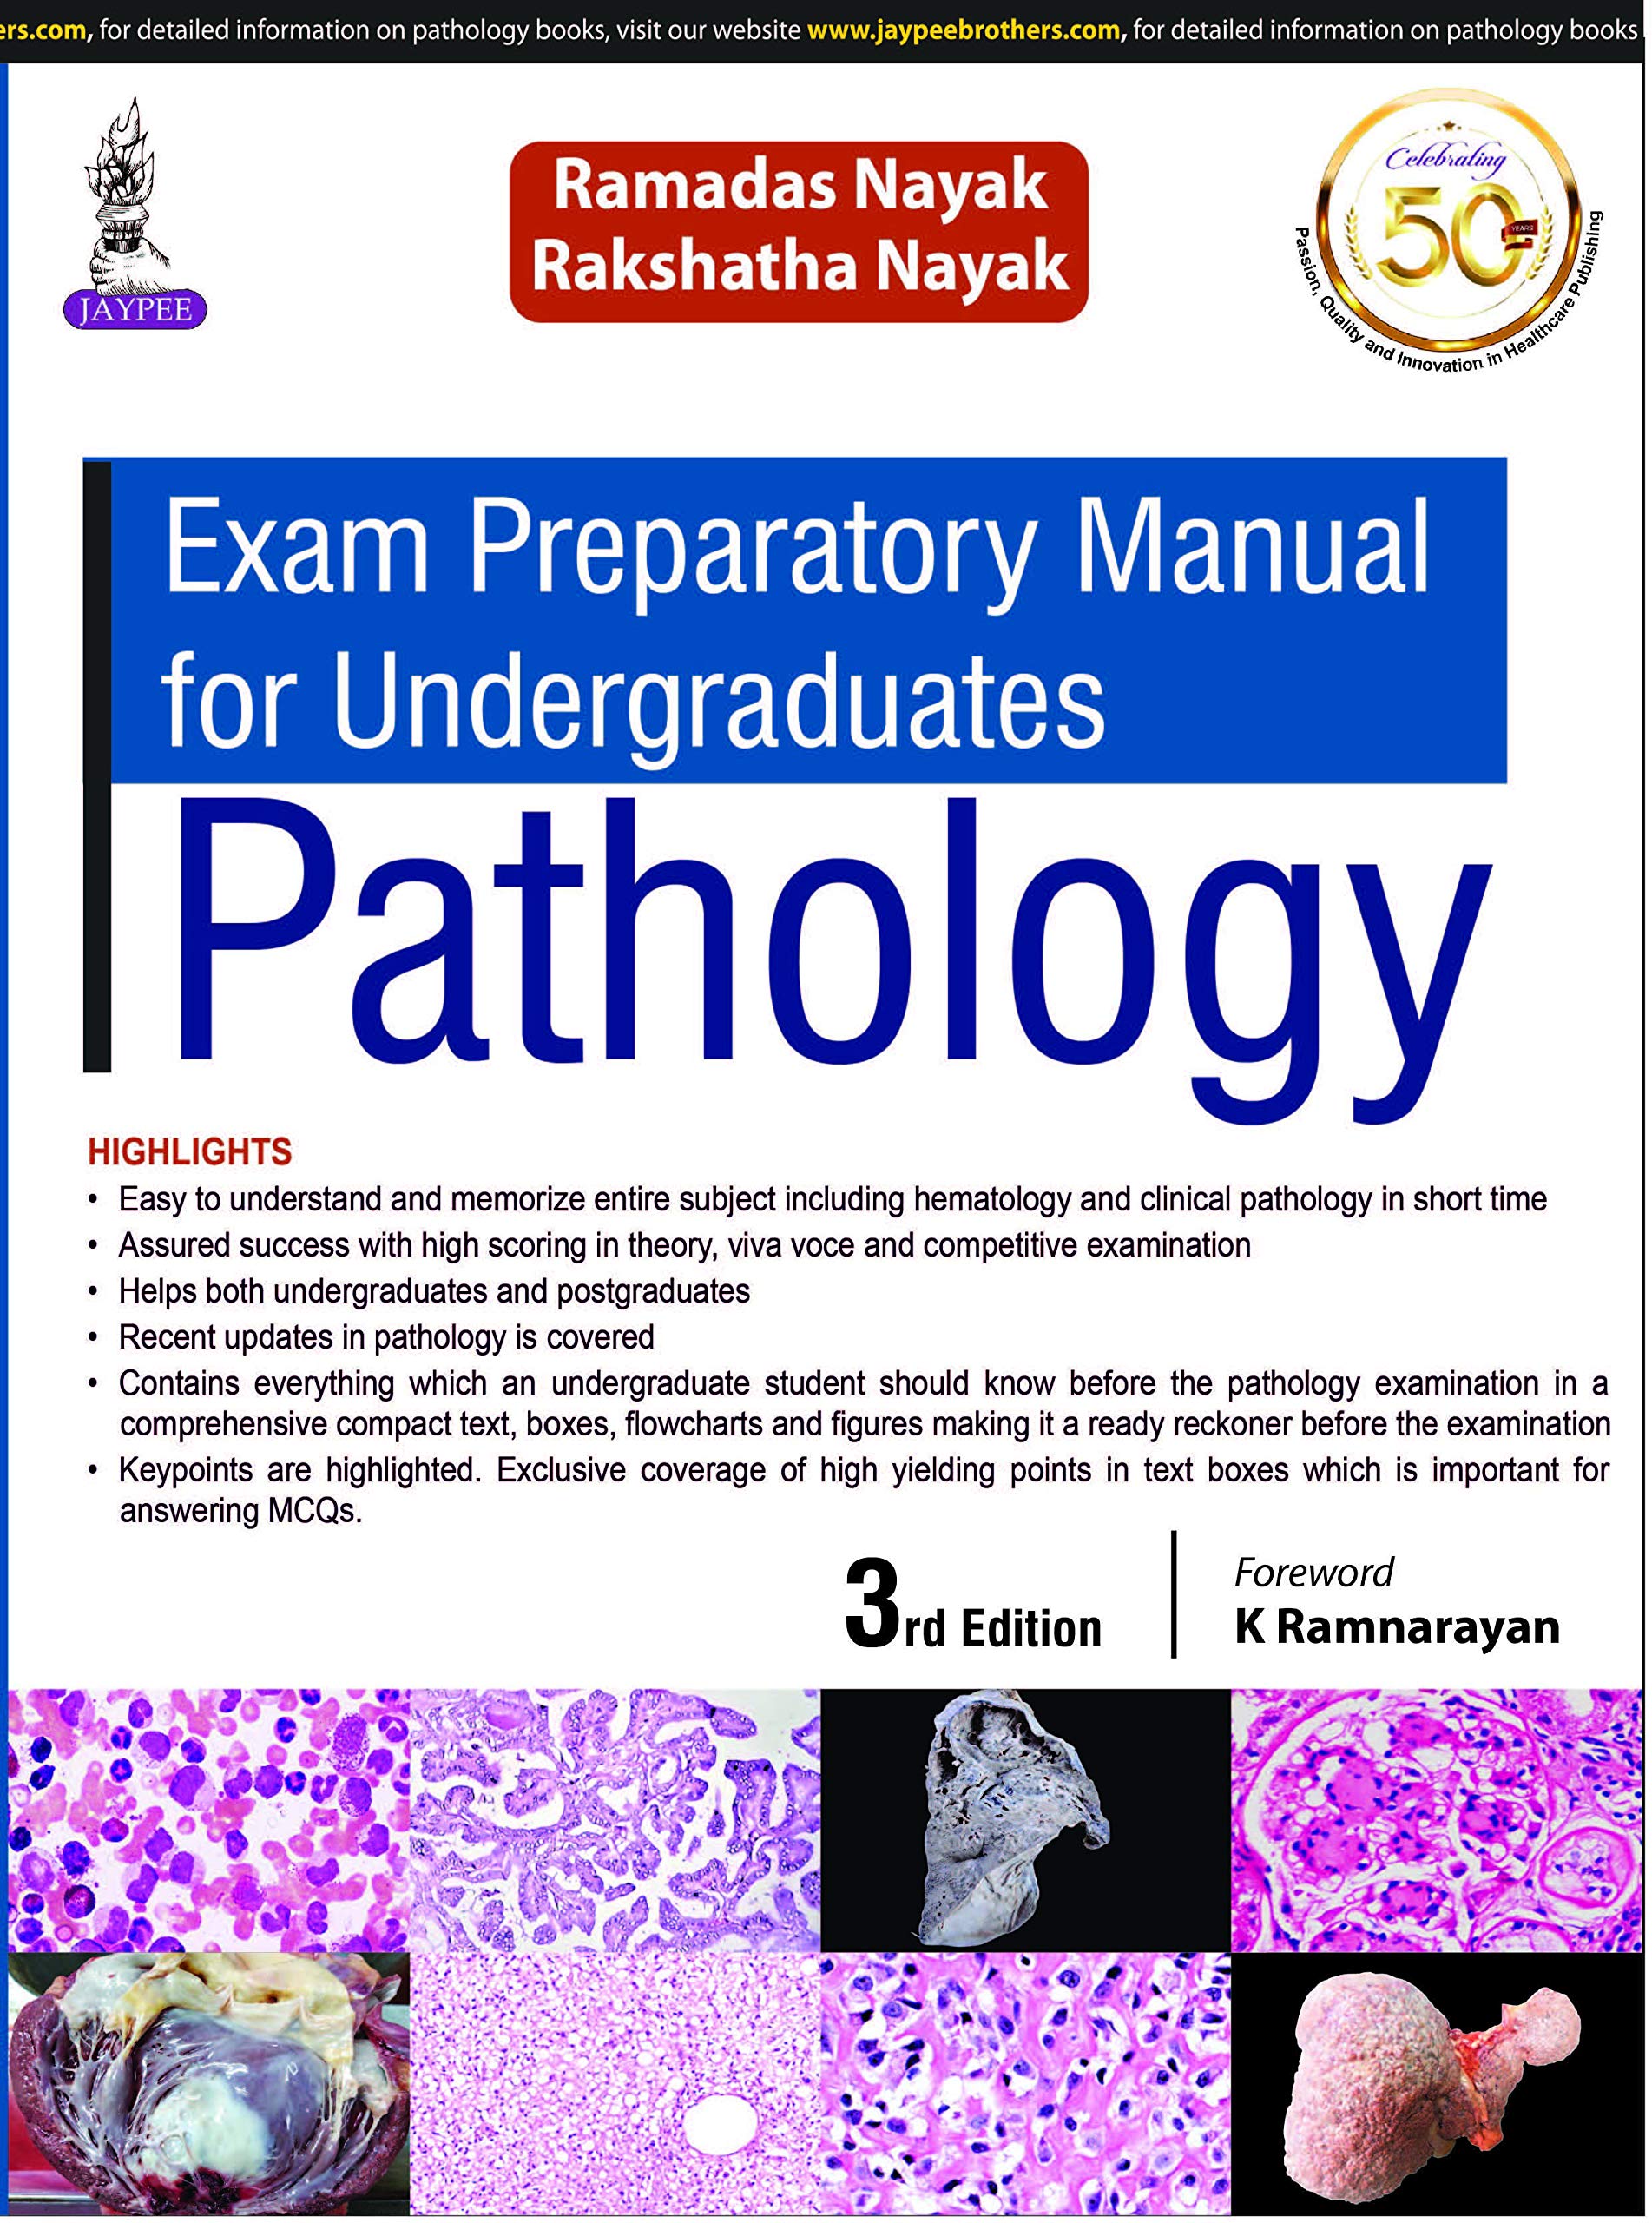 Exam Preparatory manual for Undergraduates Pathology